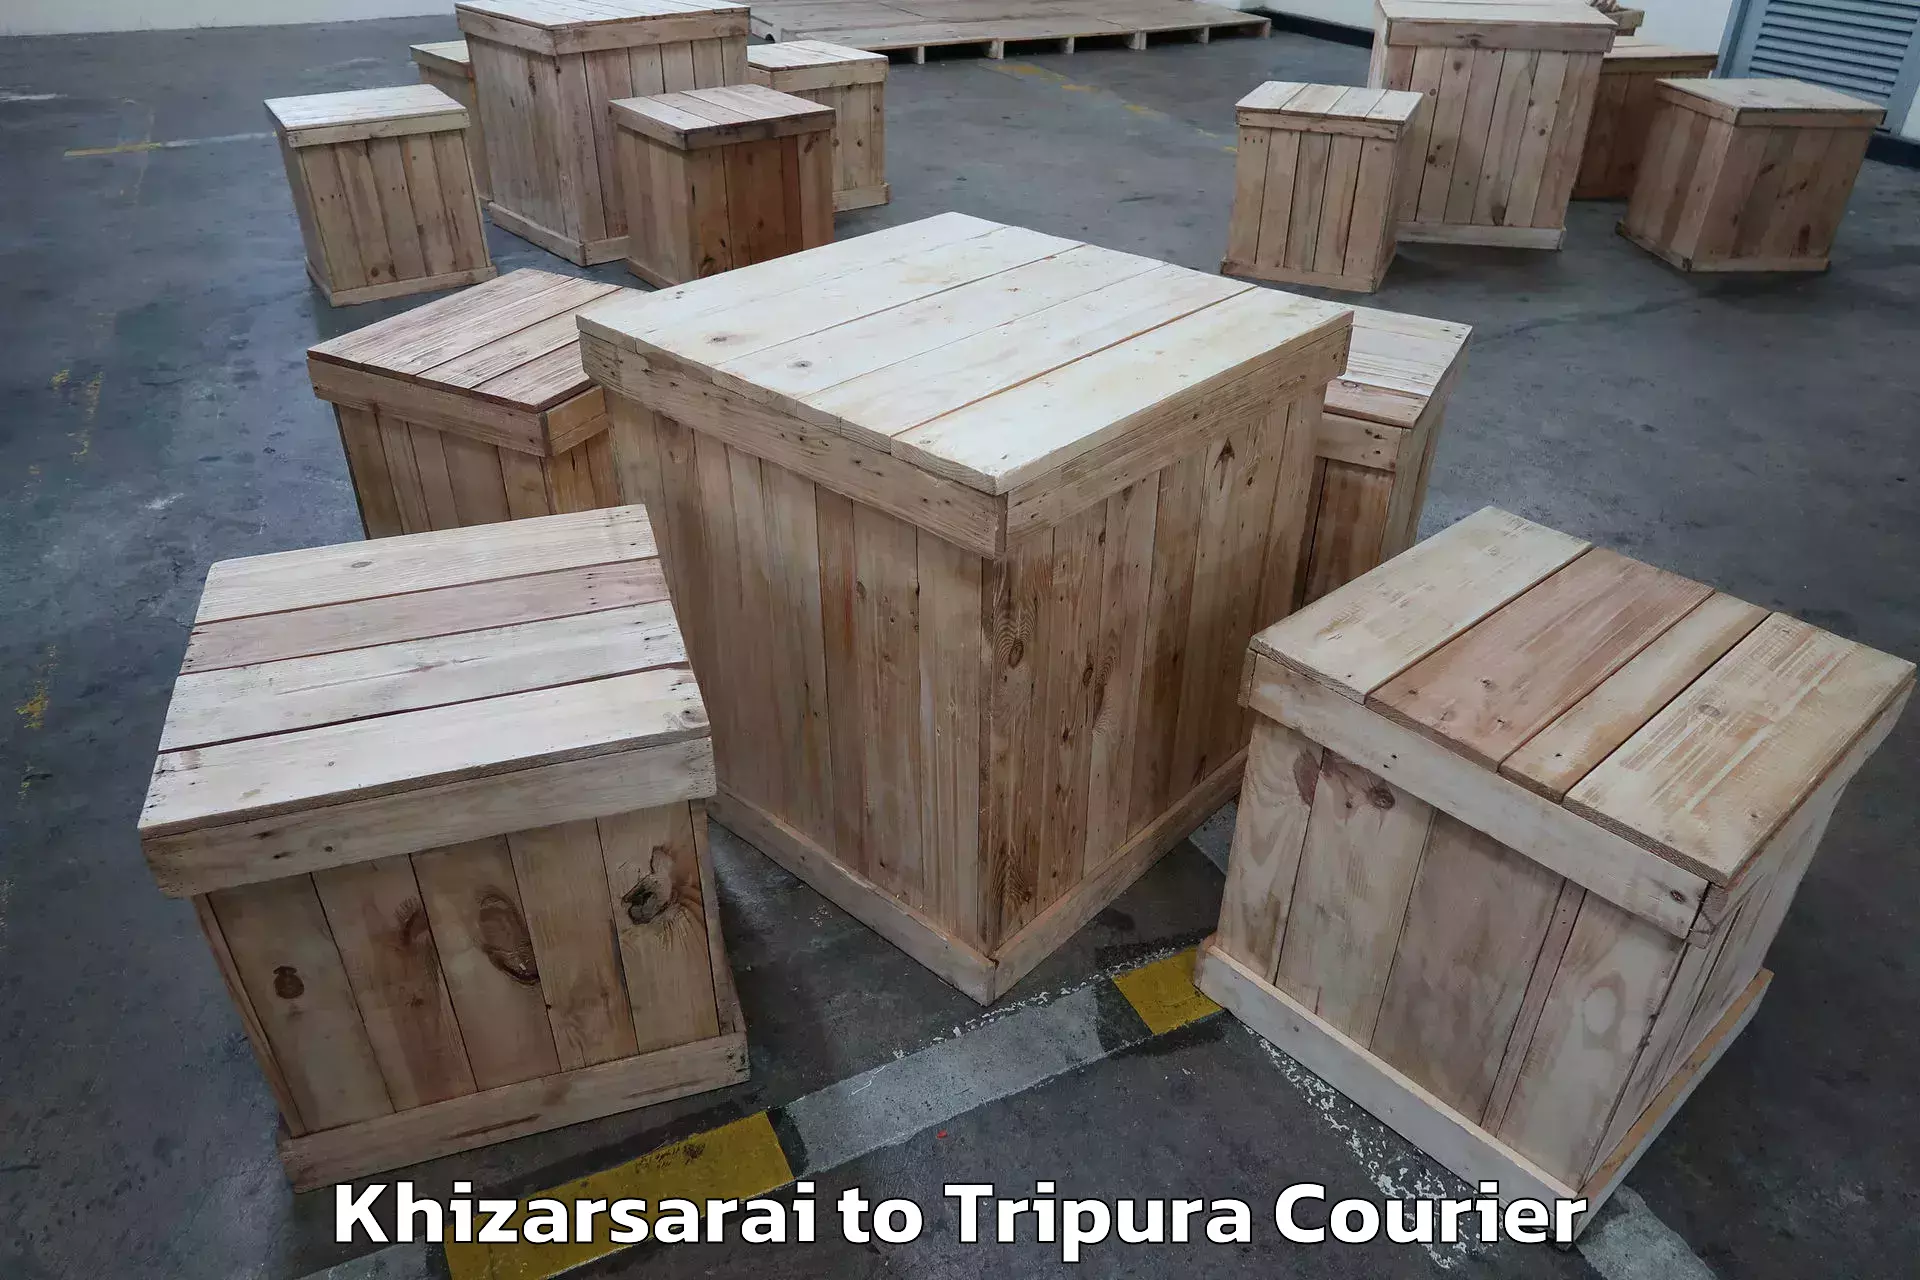 Quality moving services Khizarsarai to Udaipur Tripura